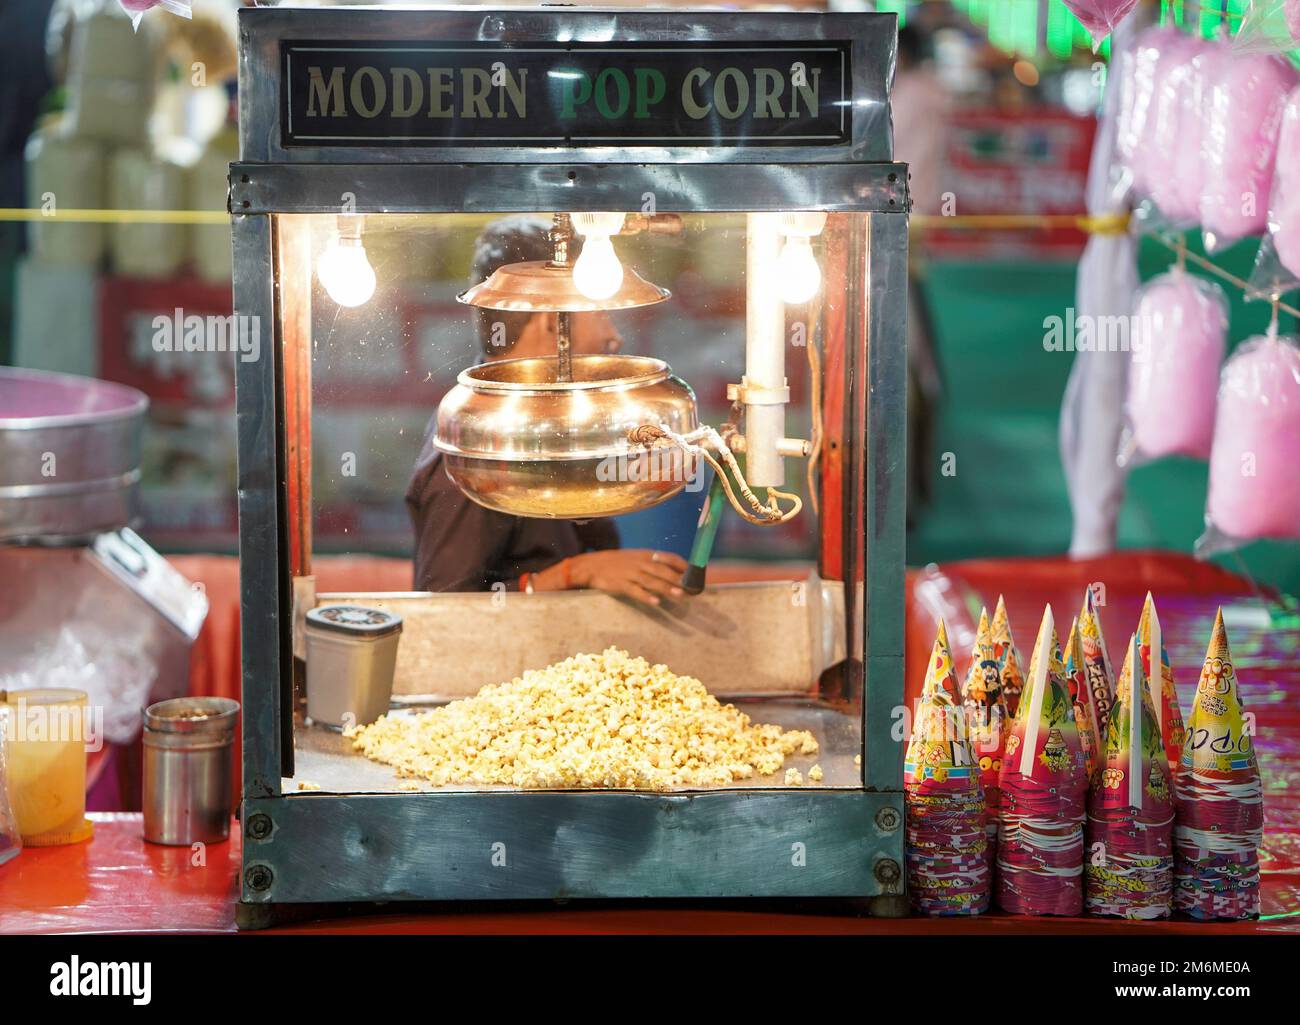 28. NOV., raipur, Chhattisgar, verstreutes, gesalzenes Popcorn, Textur. Film- und Kinokonzept, Popcorn verkauft sich in einer Popcorn-Maschine, Popcorn hinter dem Glas Stockfoto